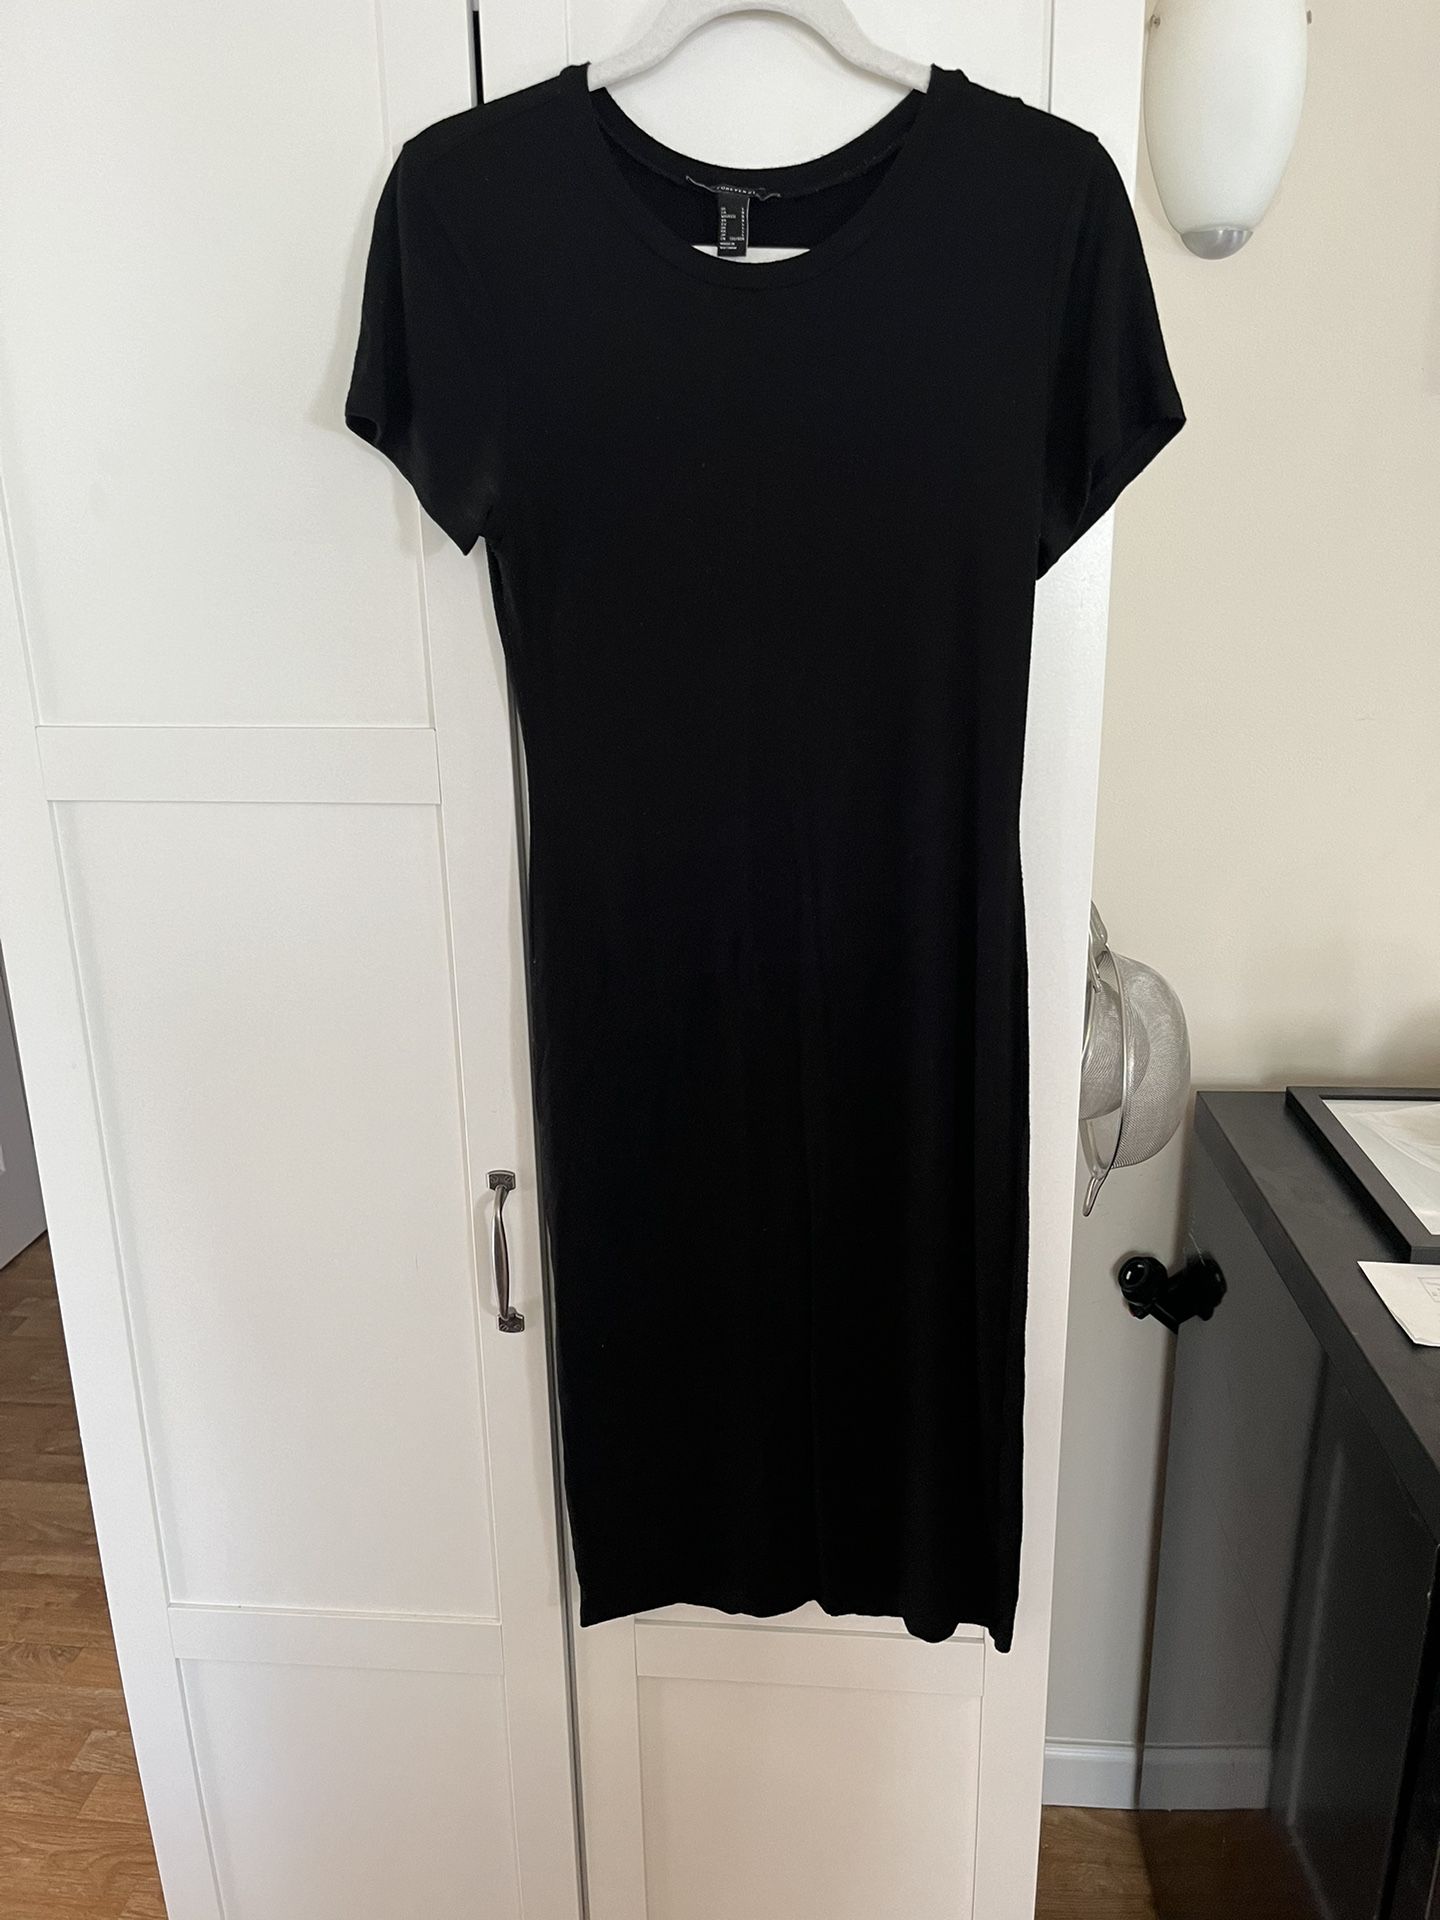 Tight Black Dress